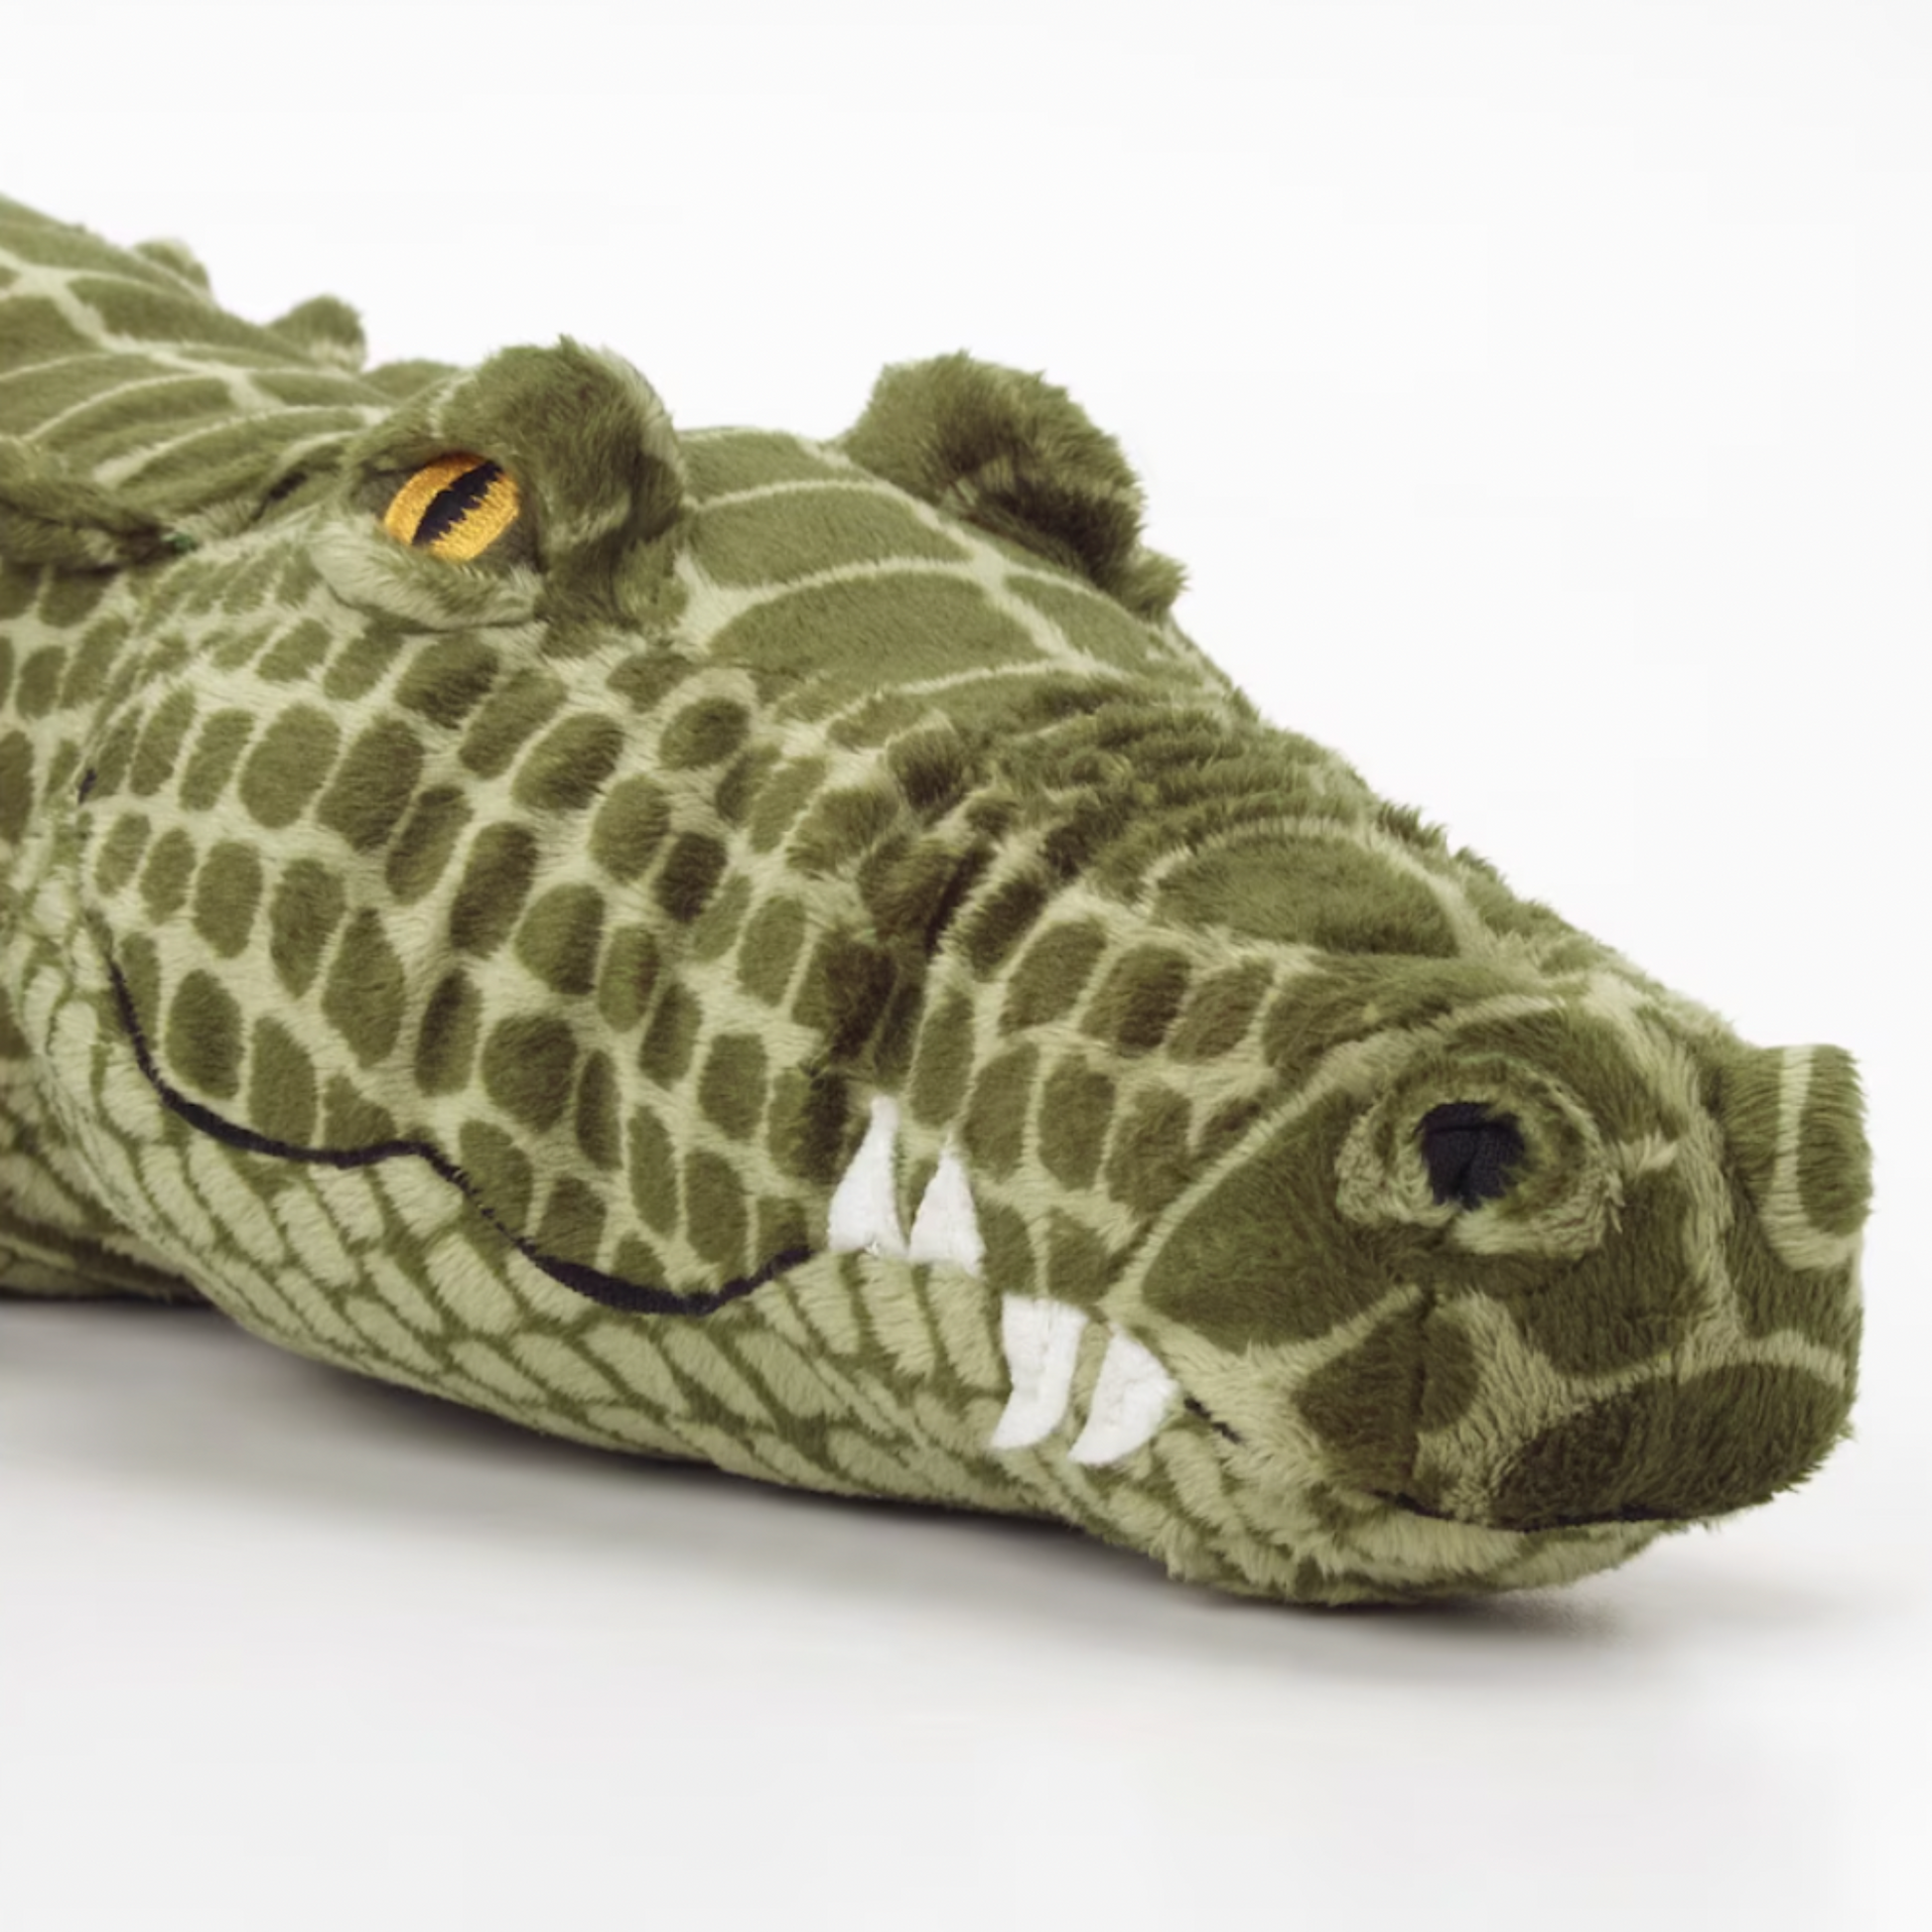 IKEA Jattematt Crocodile (6743336288321)